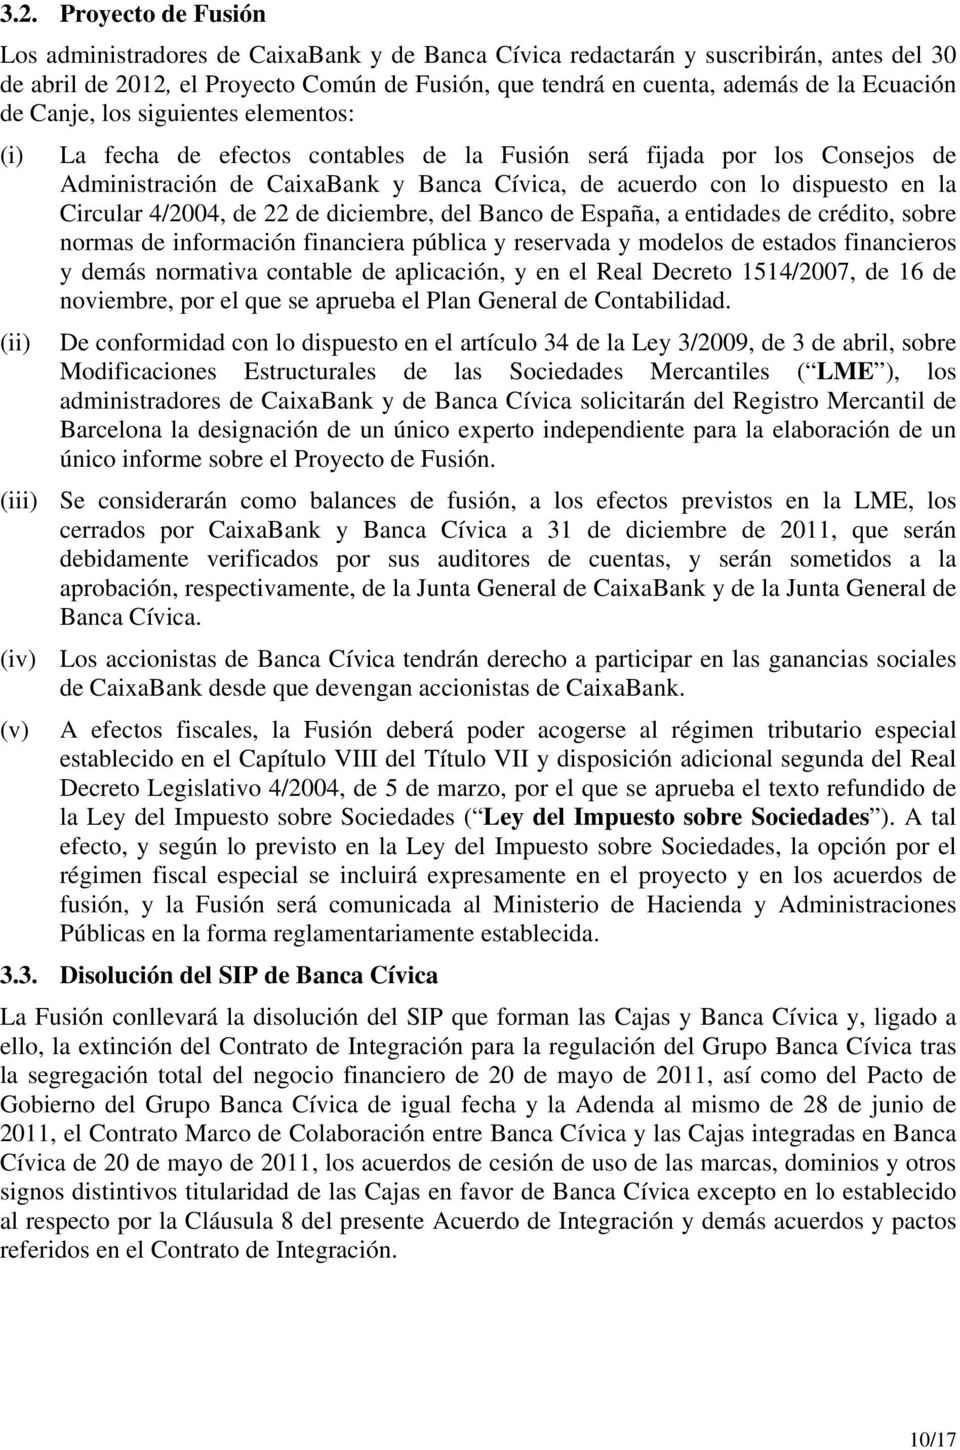 la Circular 4/2004, de 22 de diciembre, del Banco de España, a entidades de crédito, sobre normas de información financiera pública y reservada y modelos de estados financieros y demás normativa